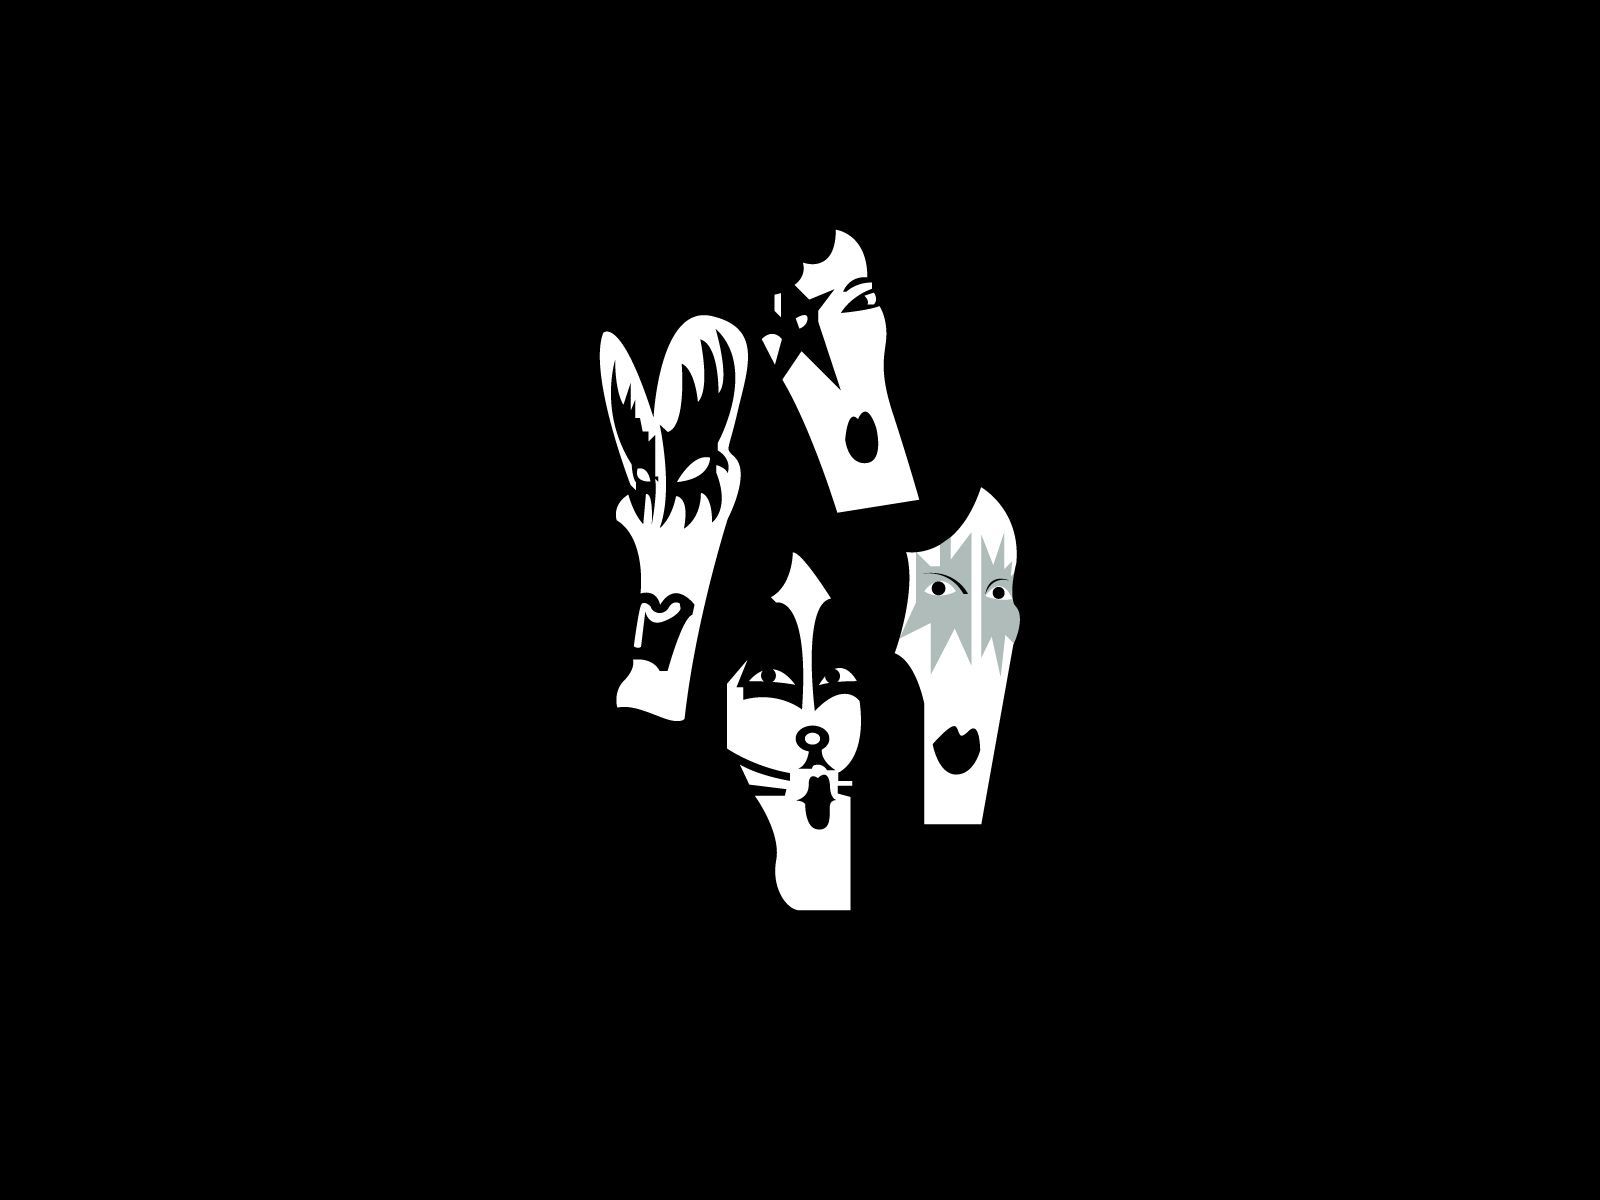 Kiss band logo and wallpaper | Band logos - Rock band logos, metal ...